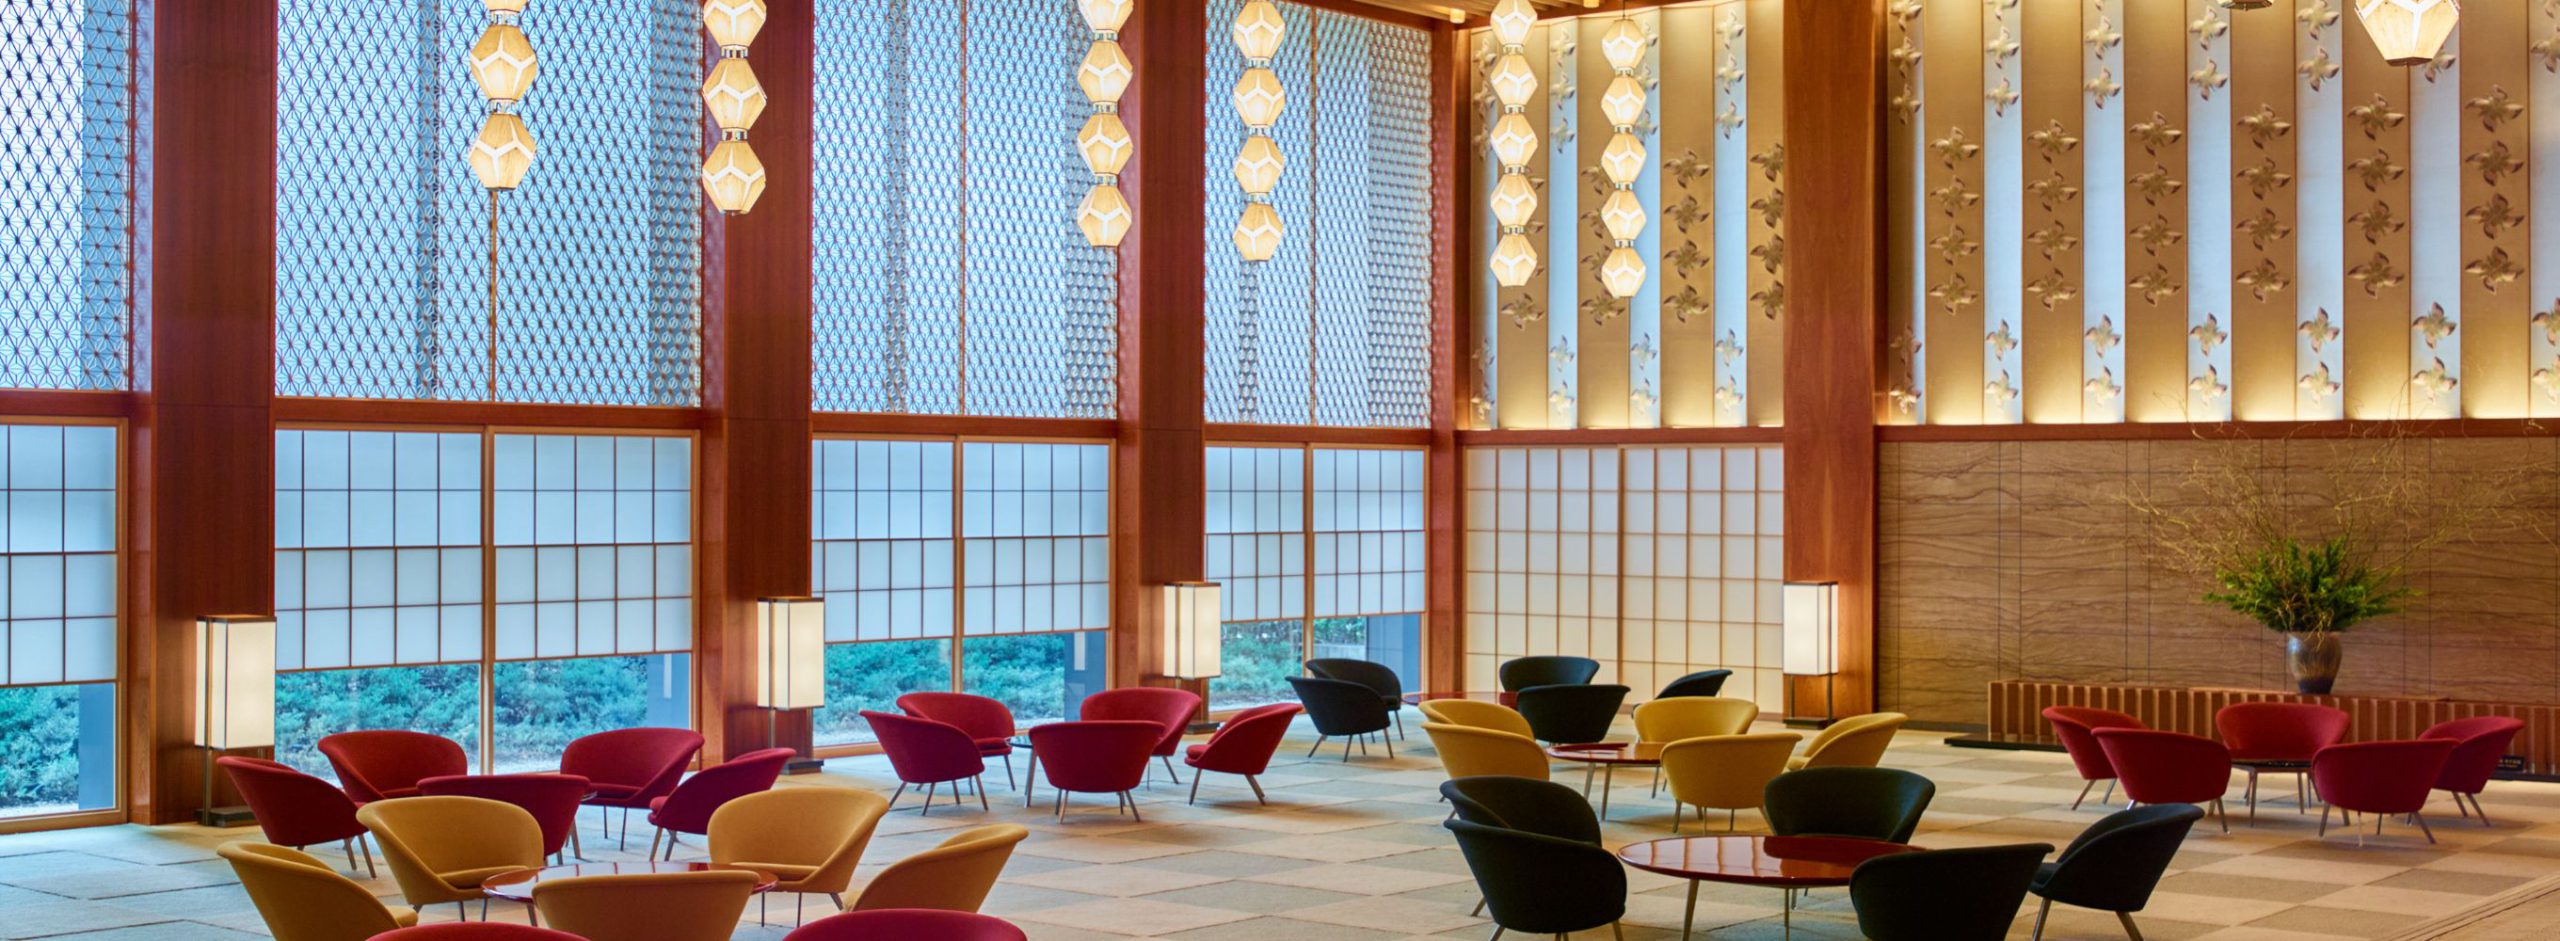 「ホテルオークラ東京」で愛された伝説のロビー空間を以前と変わらない印象で再構築 ――虎ノ門「The Okura Tokyo」